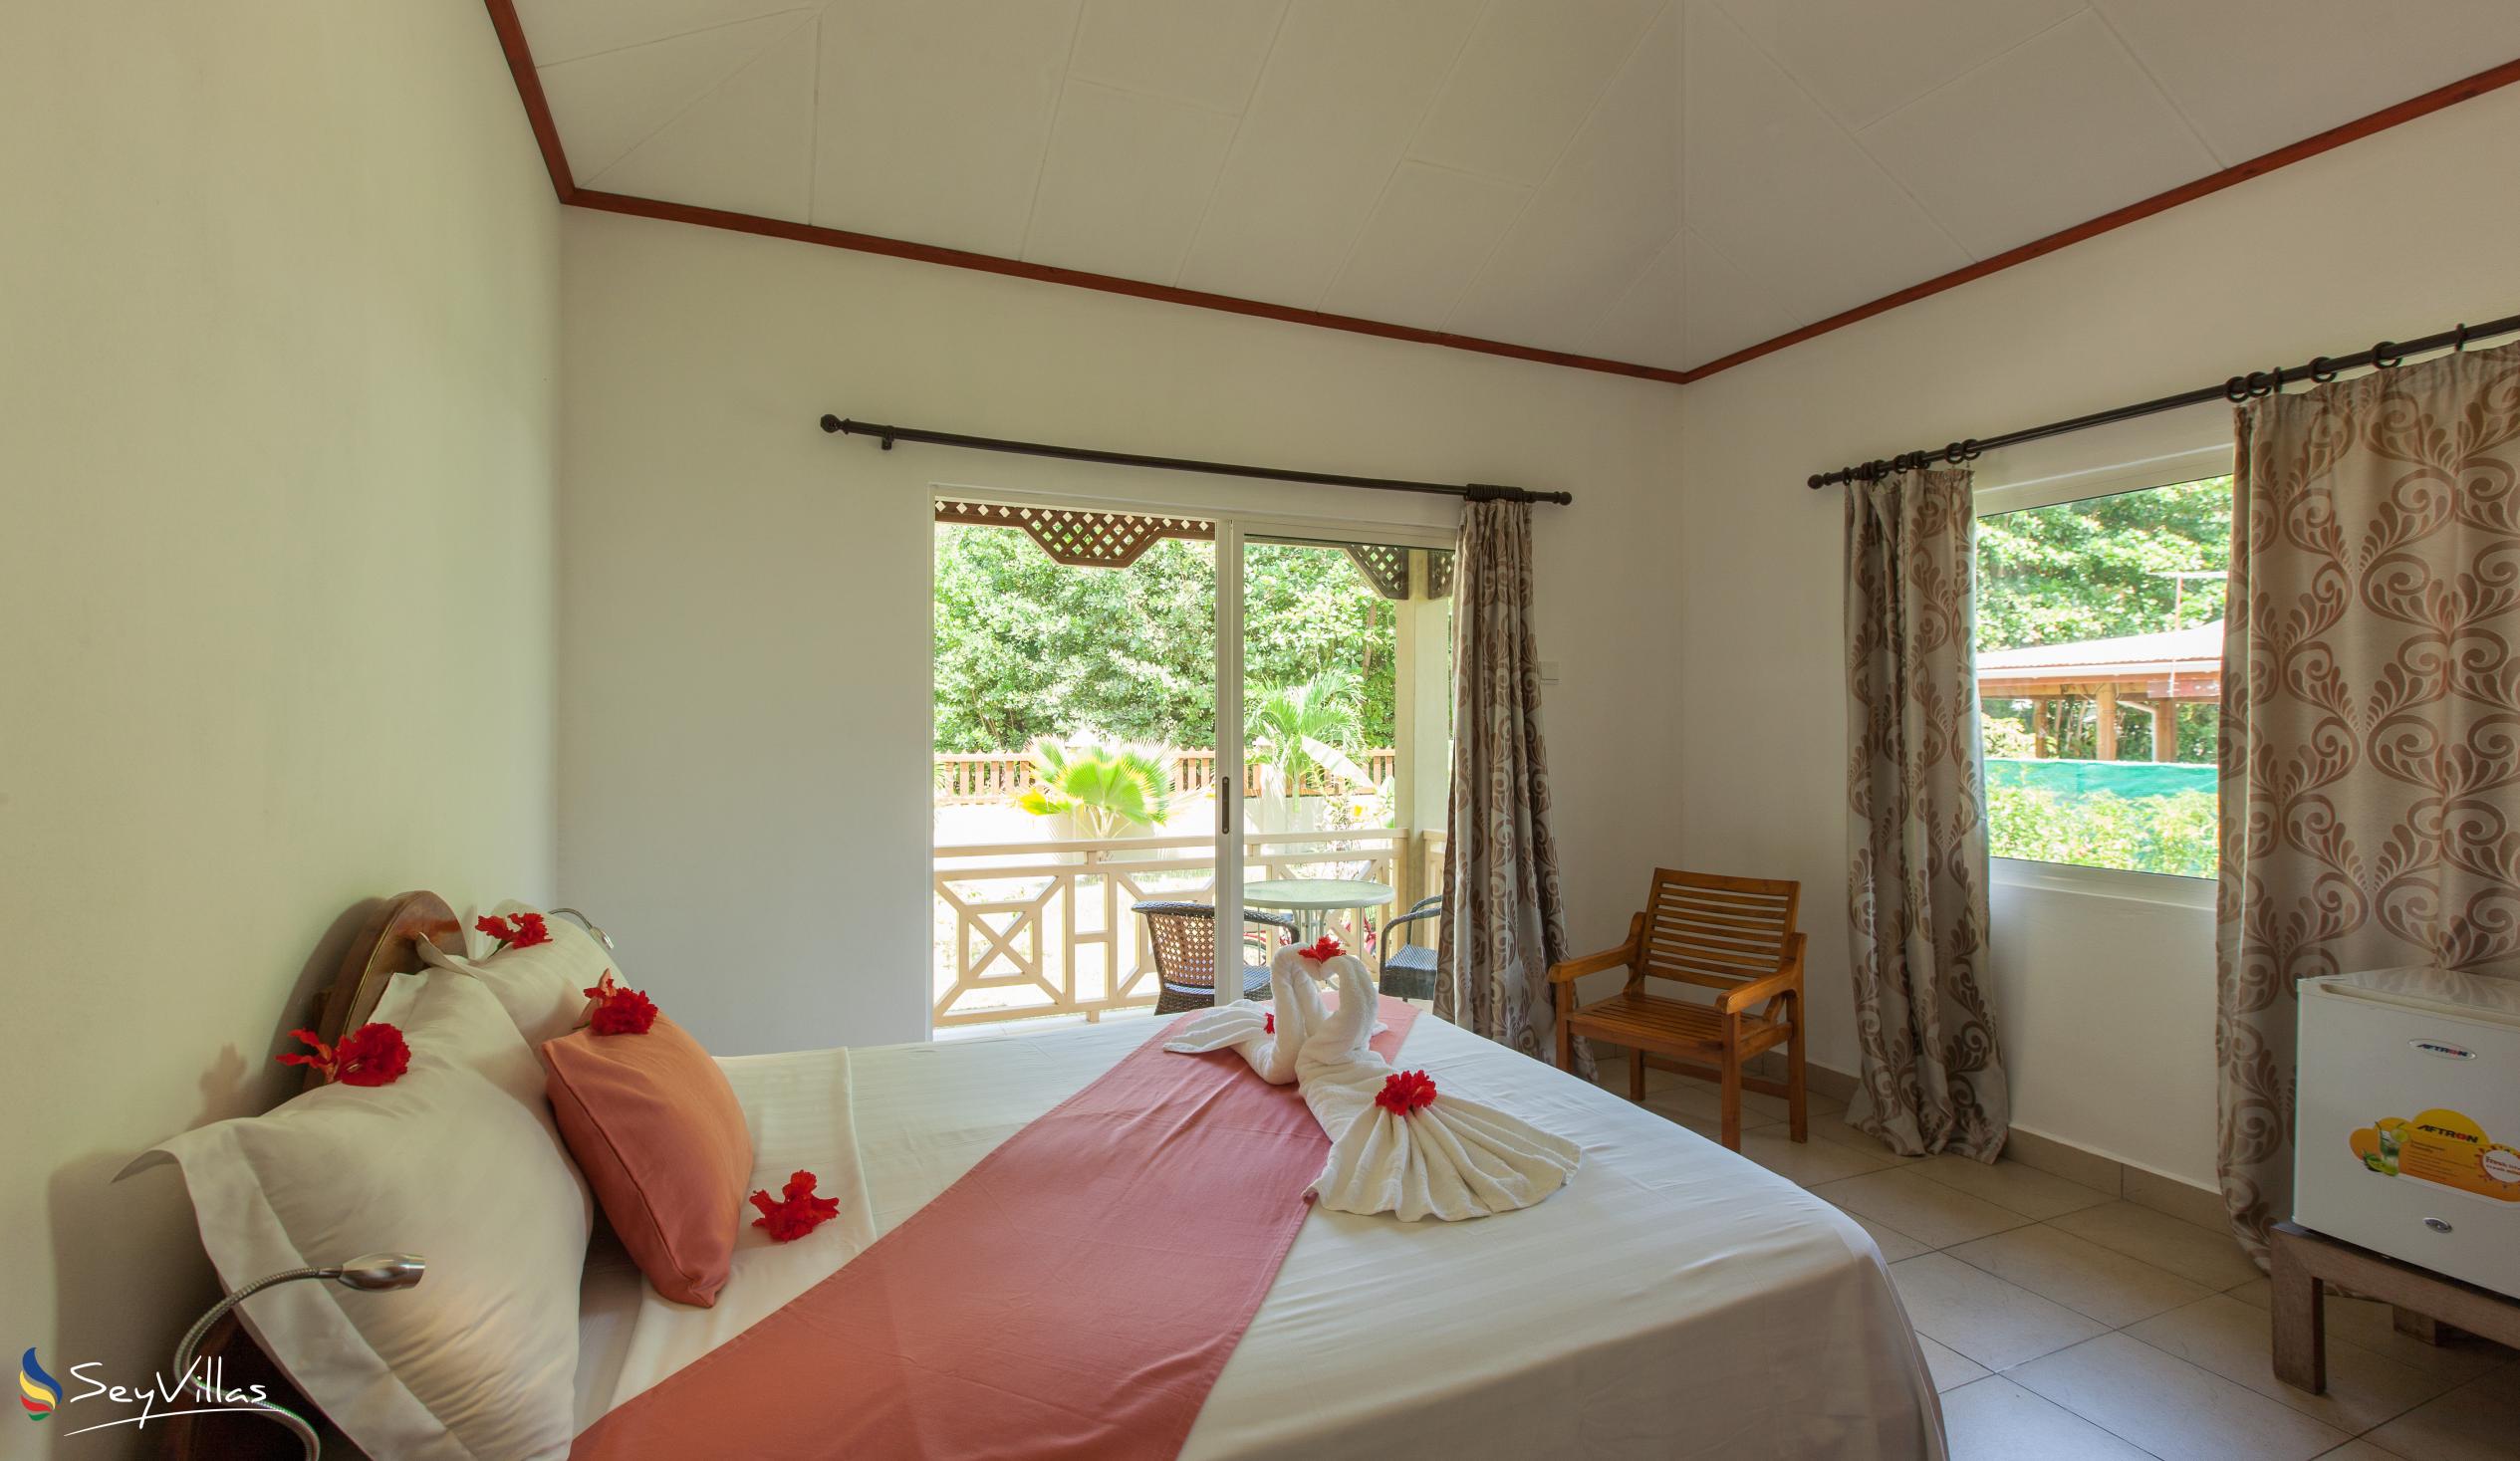 Foto 20: Hostellerie La Digue - Chalet 3 chambres - La Digue (Seychelles)